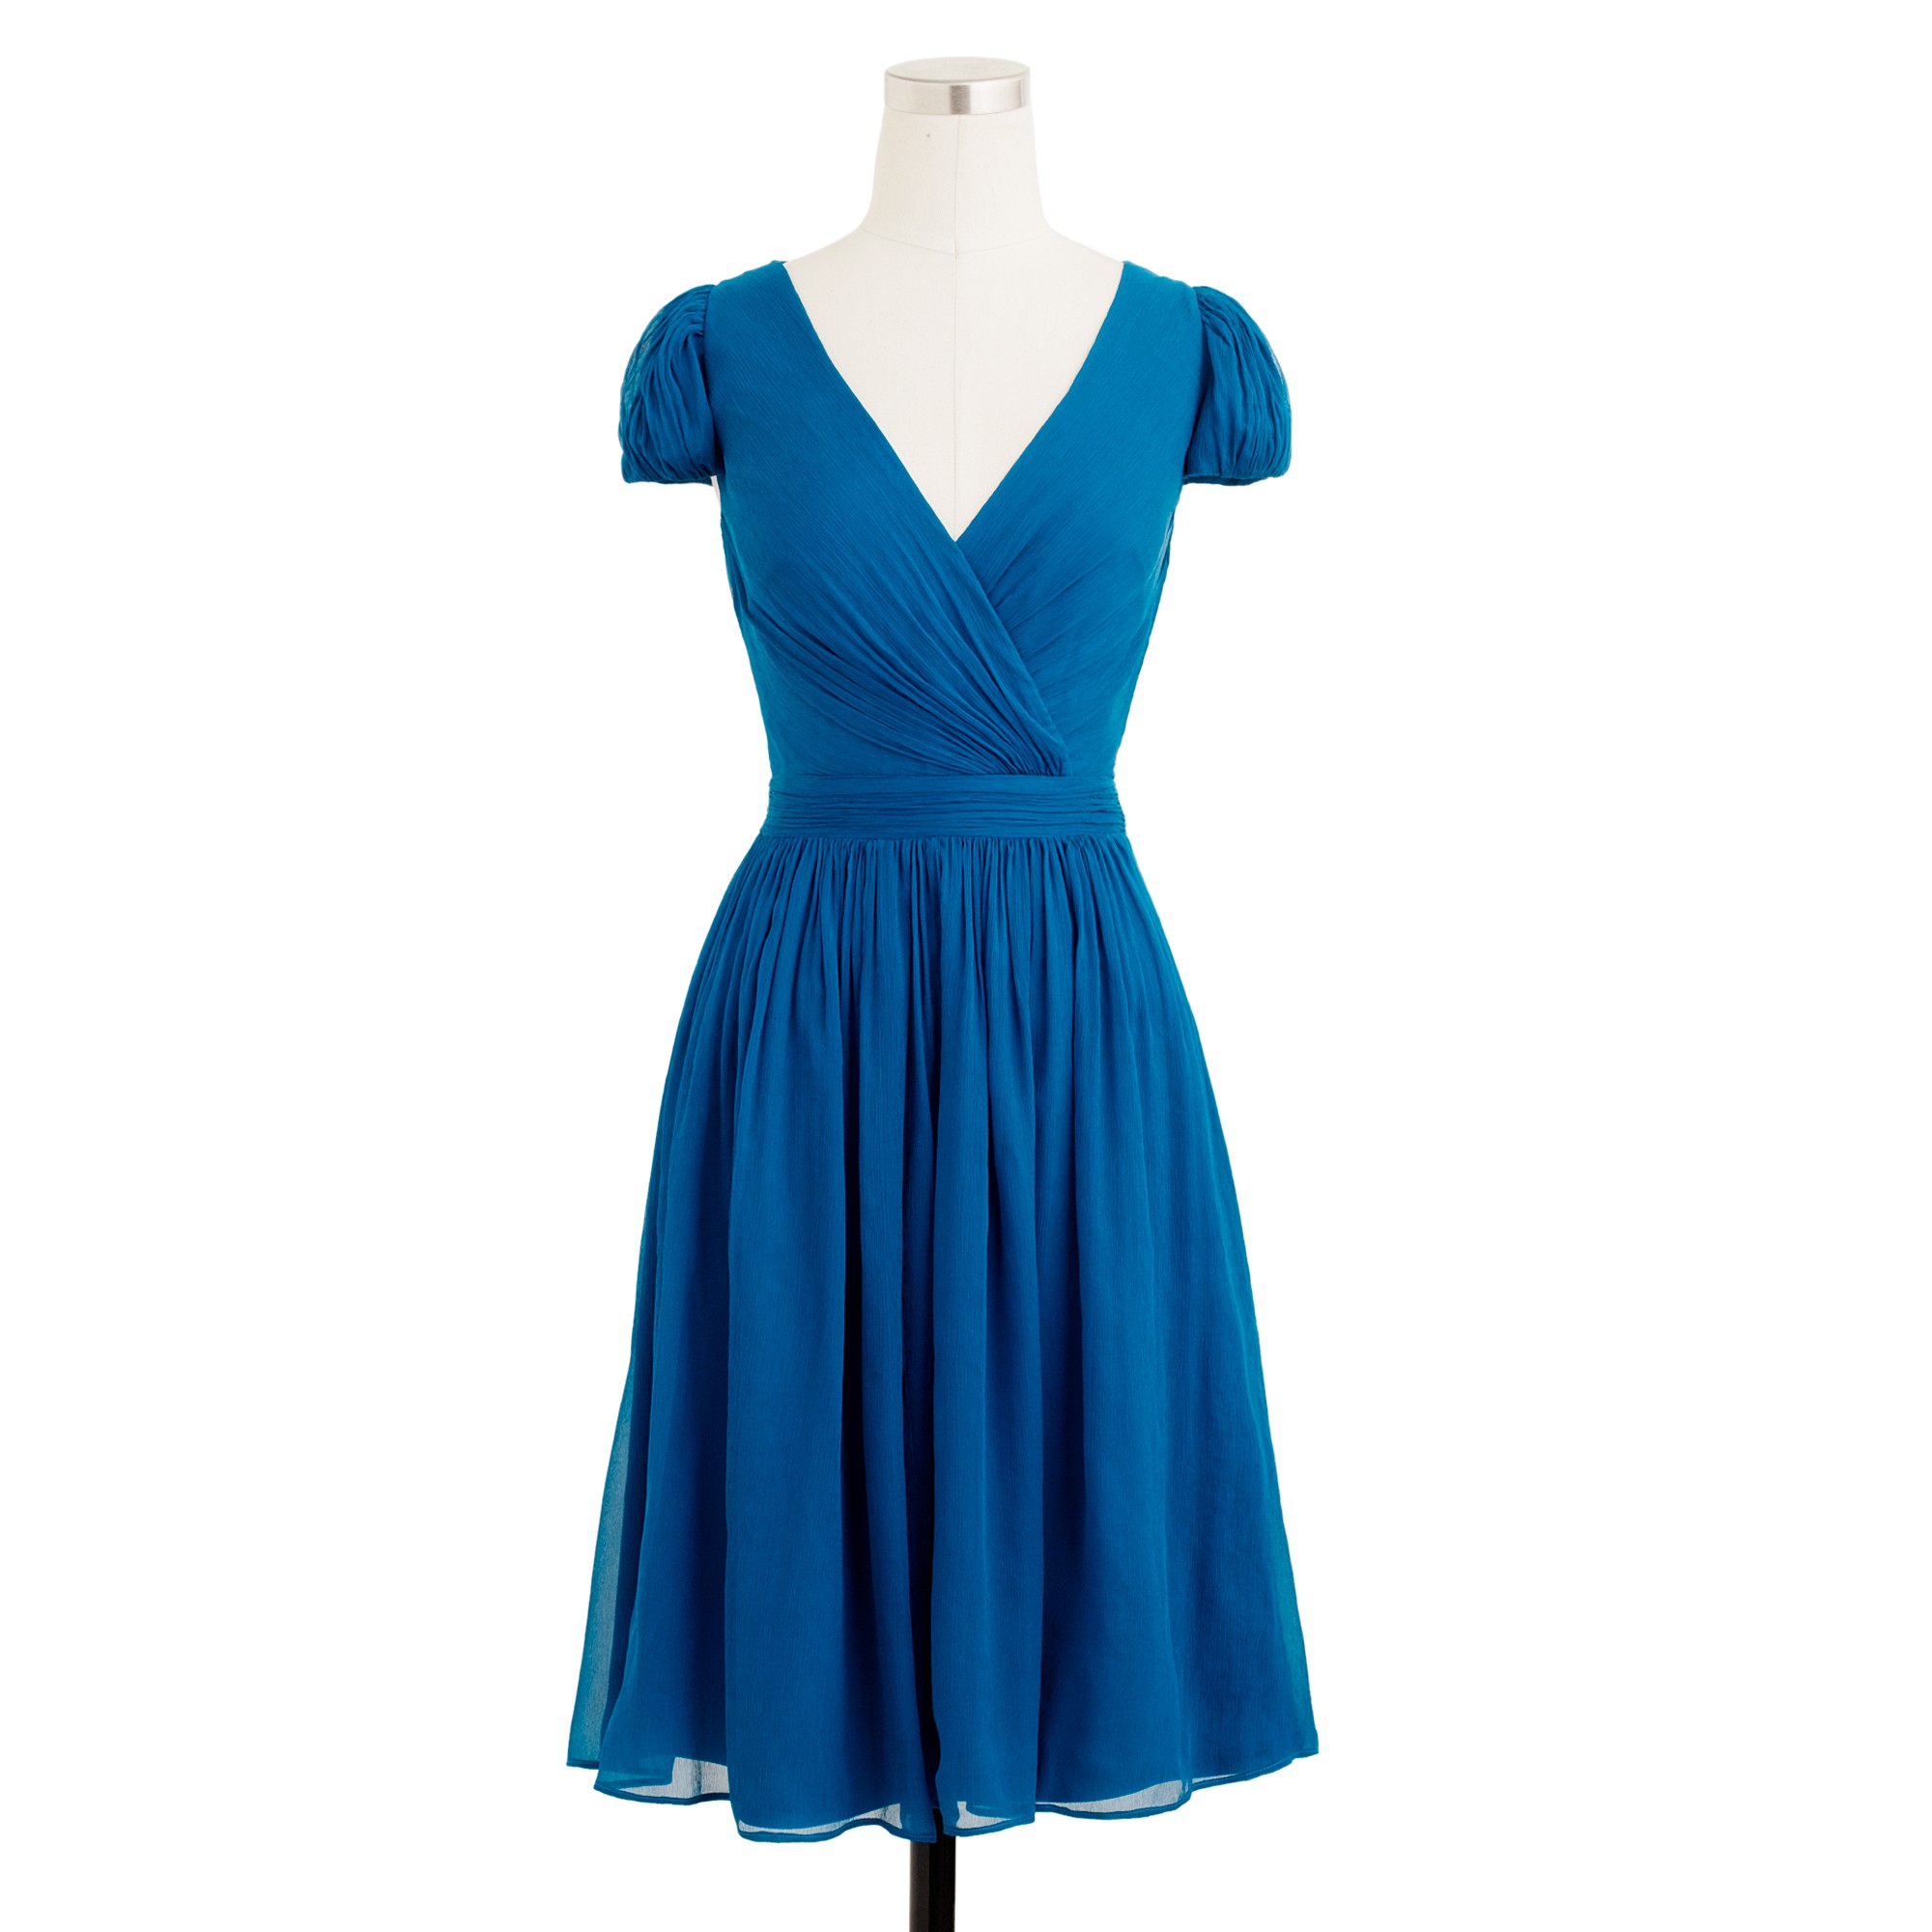 J.crew Mirabelle Dress in Silk Chiffon in Blue | Lyst